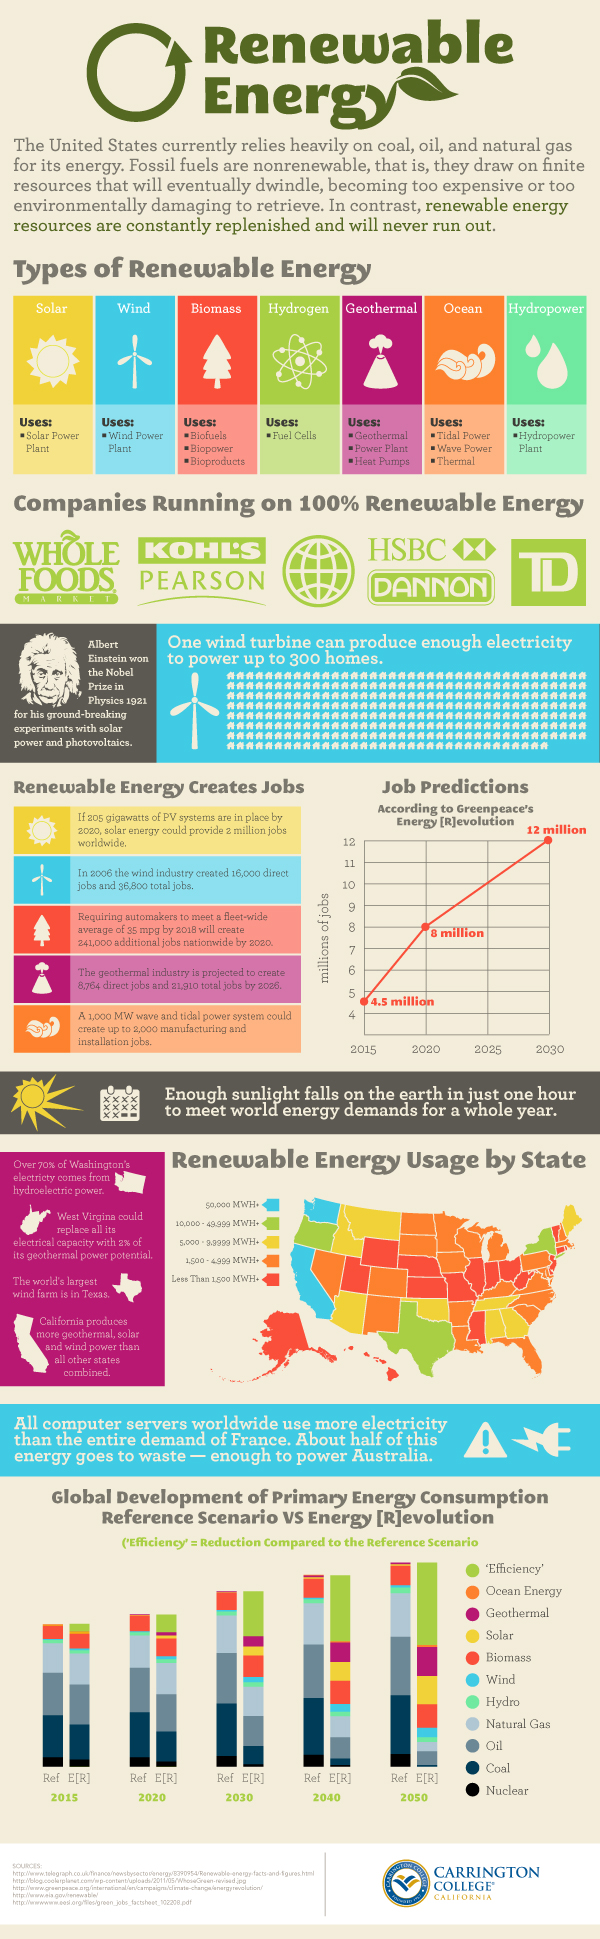 Renewable Energy Industry Trends